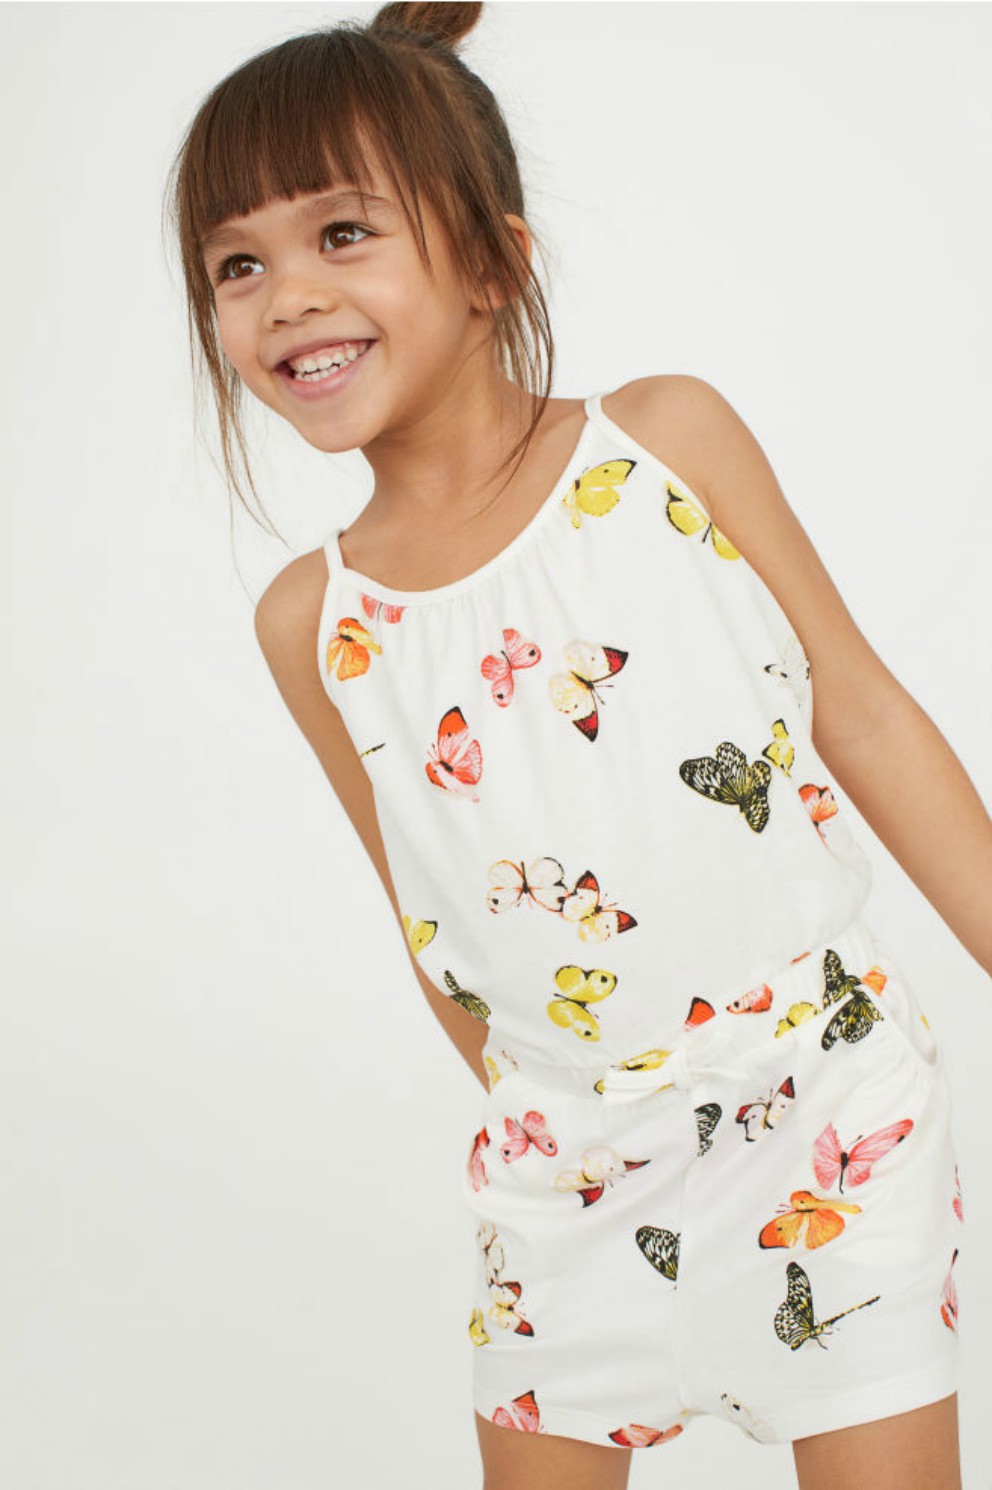 Marquesina Revelar hada H&M y su nuevas propuestas de vestuario para niña